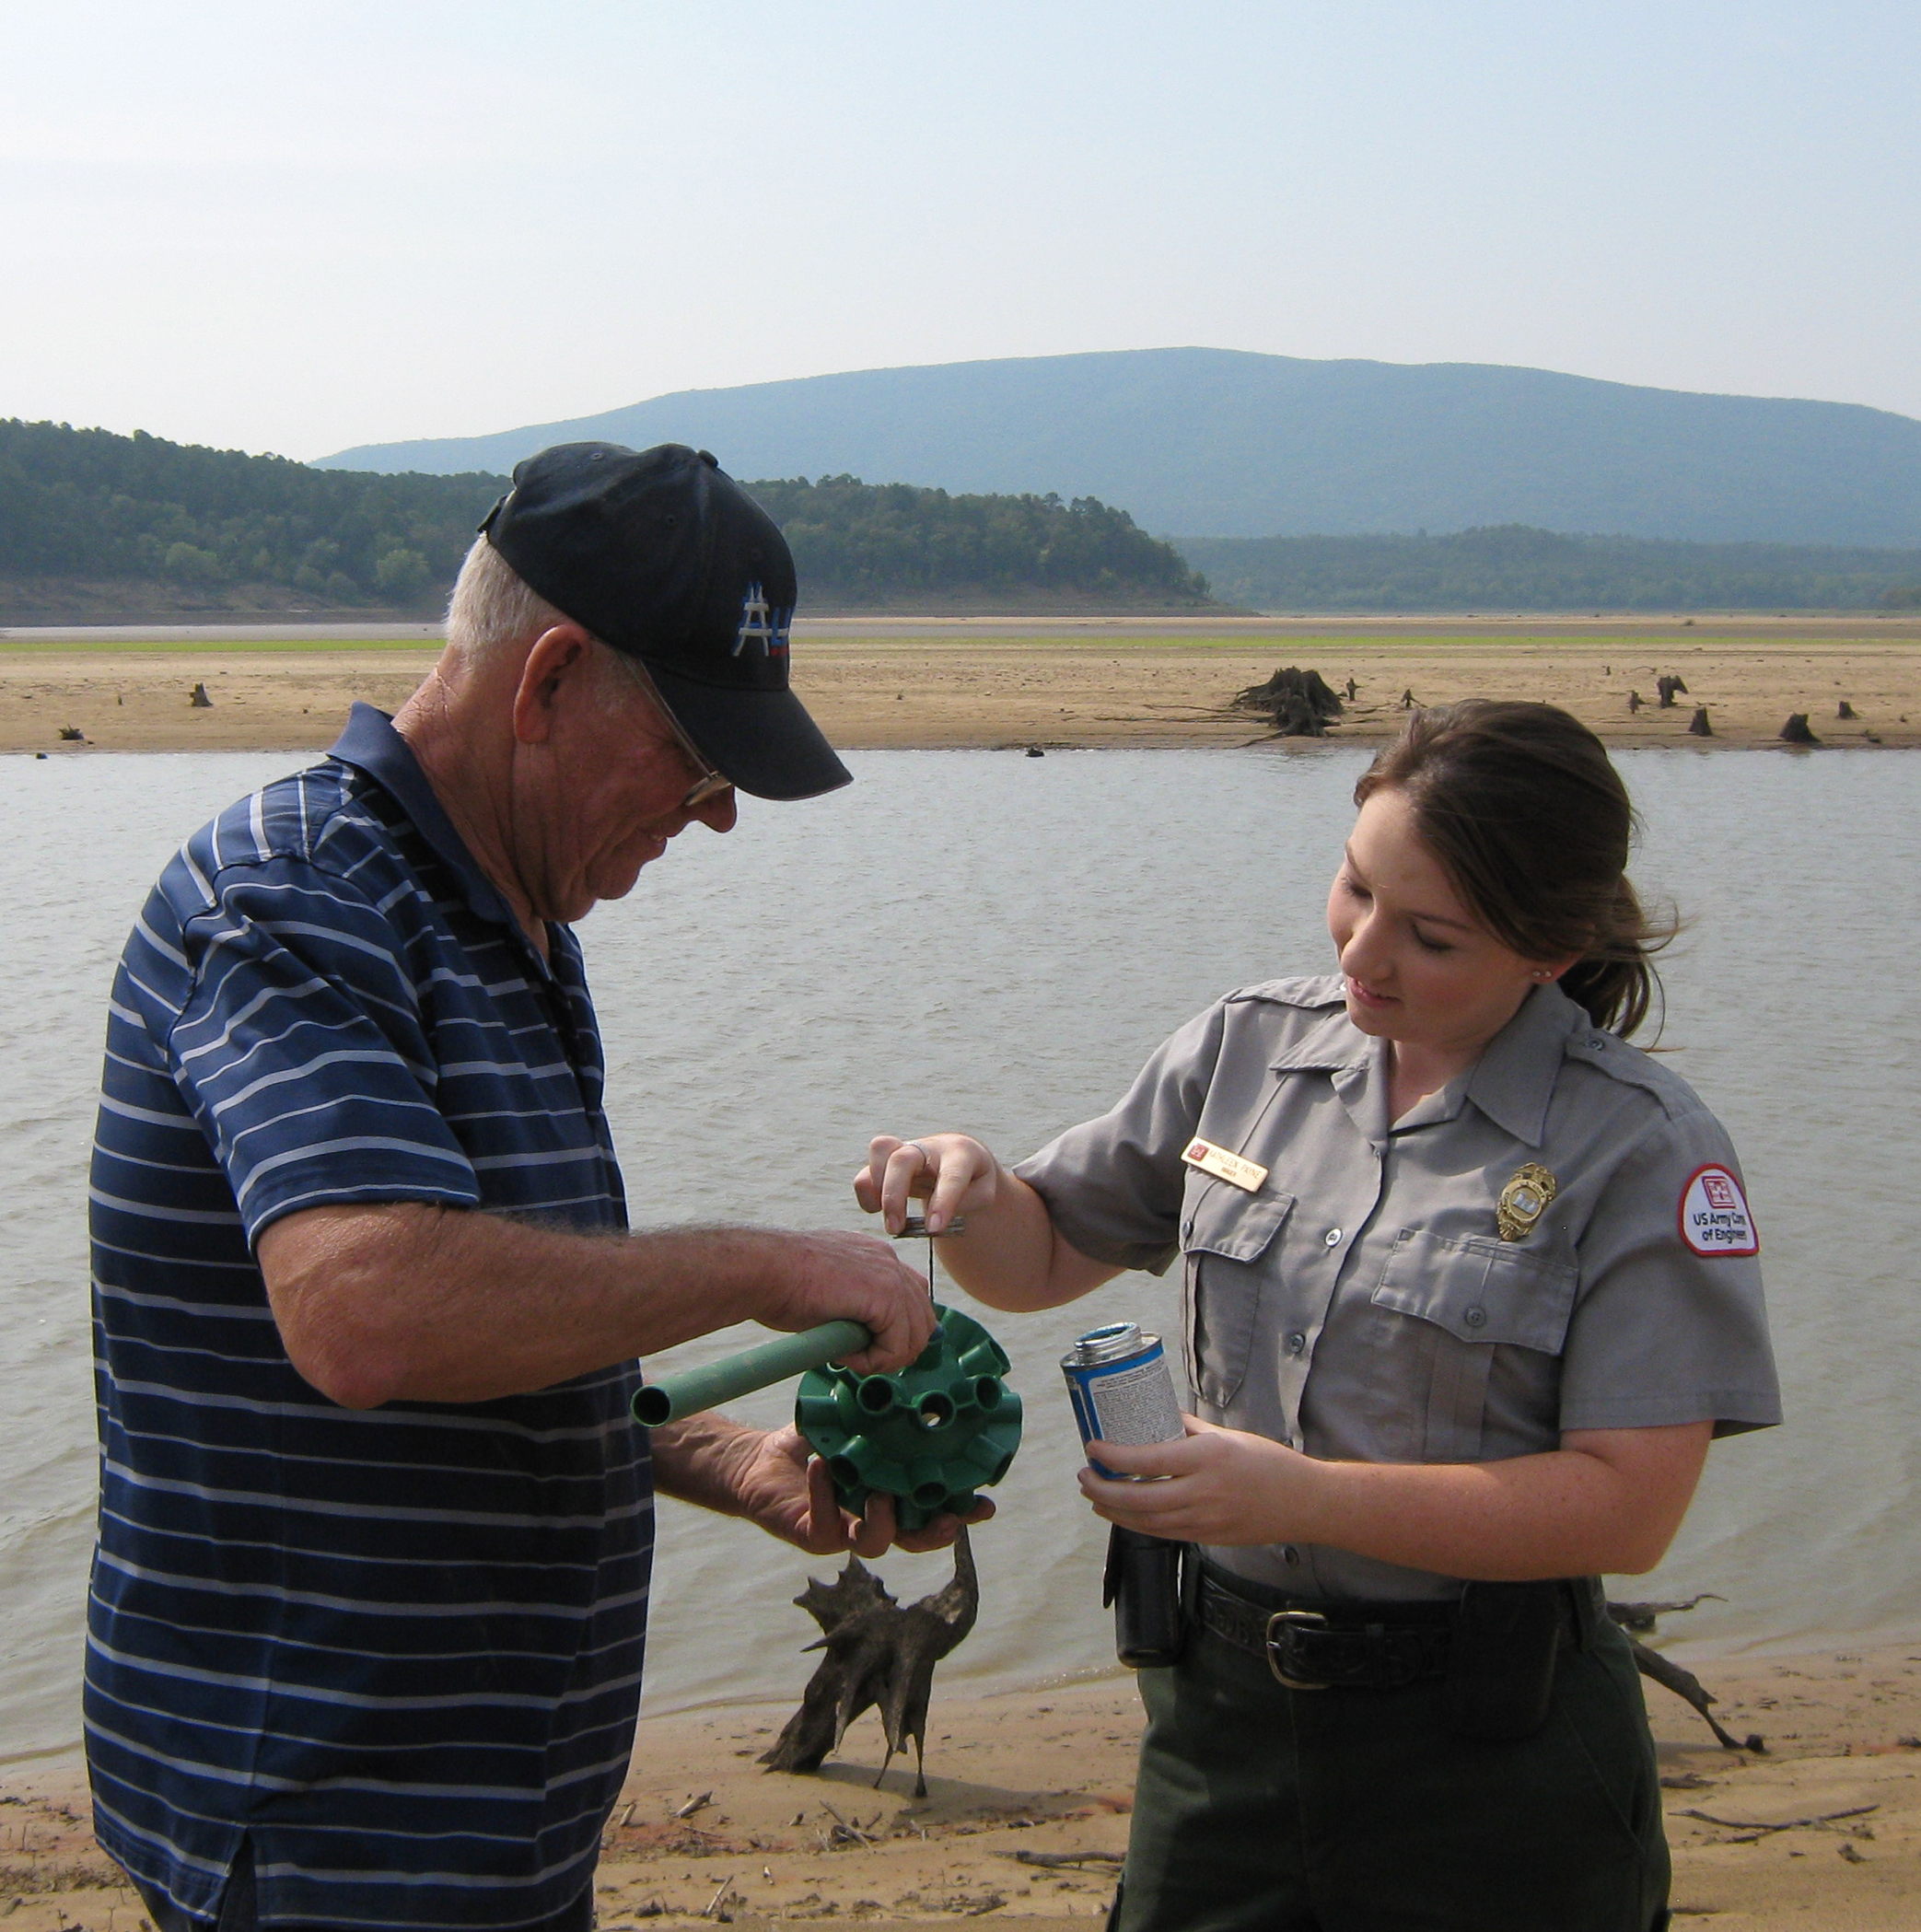 Volunteer and Park Ranger putting together a fish shelter